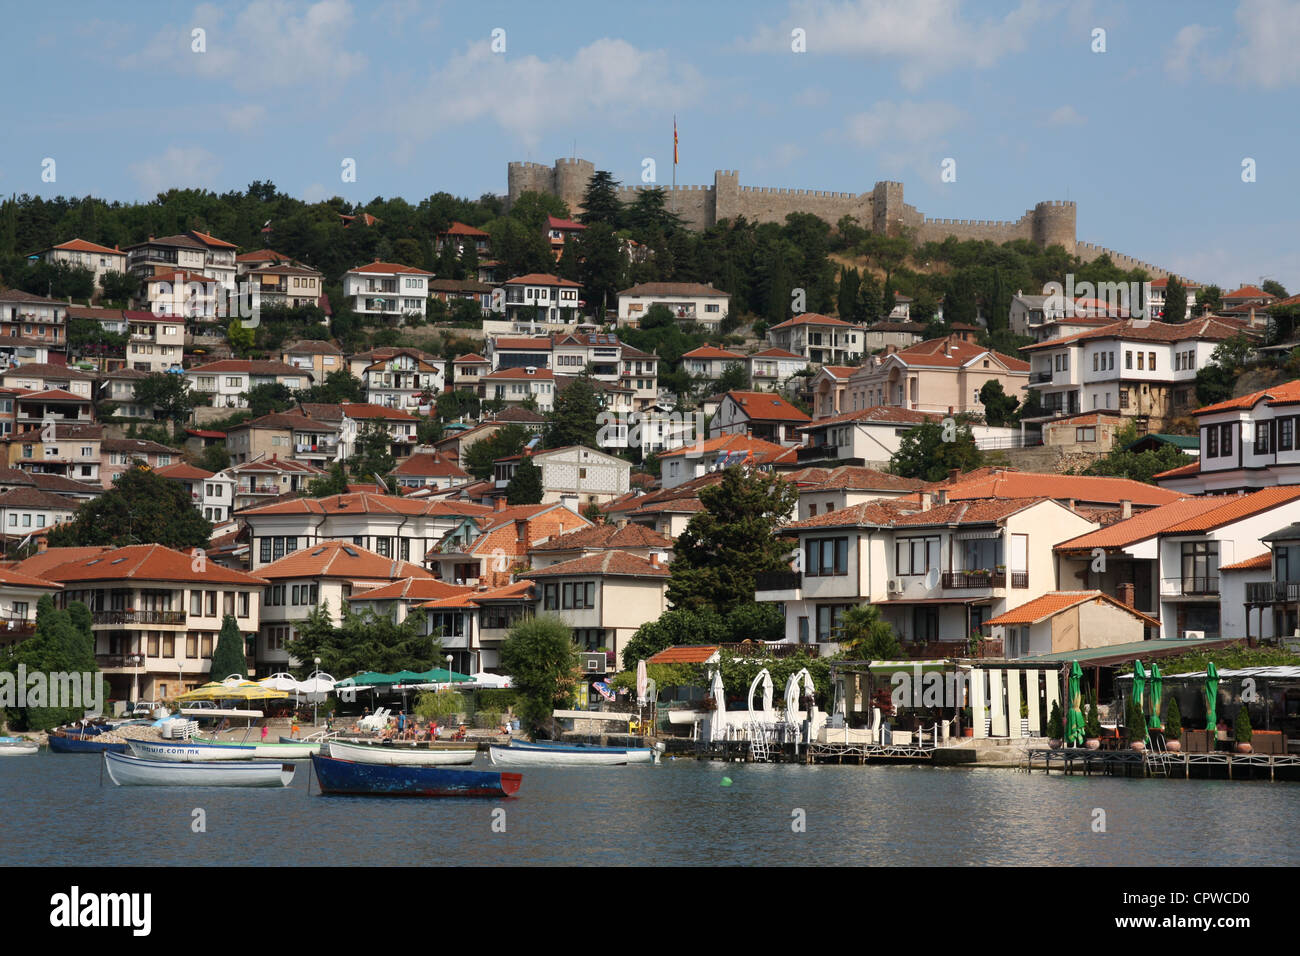 Samuel della fortezza a Ohrid, case unifamiliari in città, il lago di Ohrid e barche. Spiaggia. Foto Stock